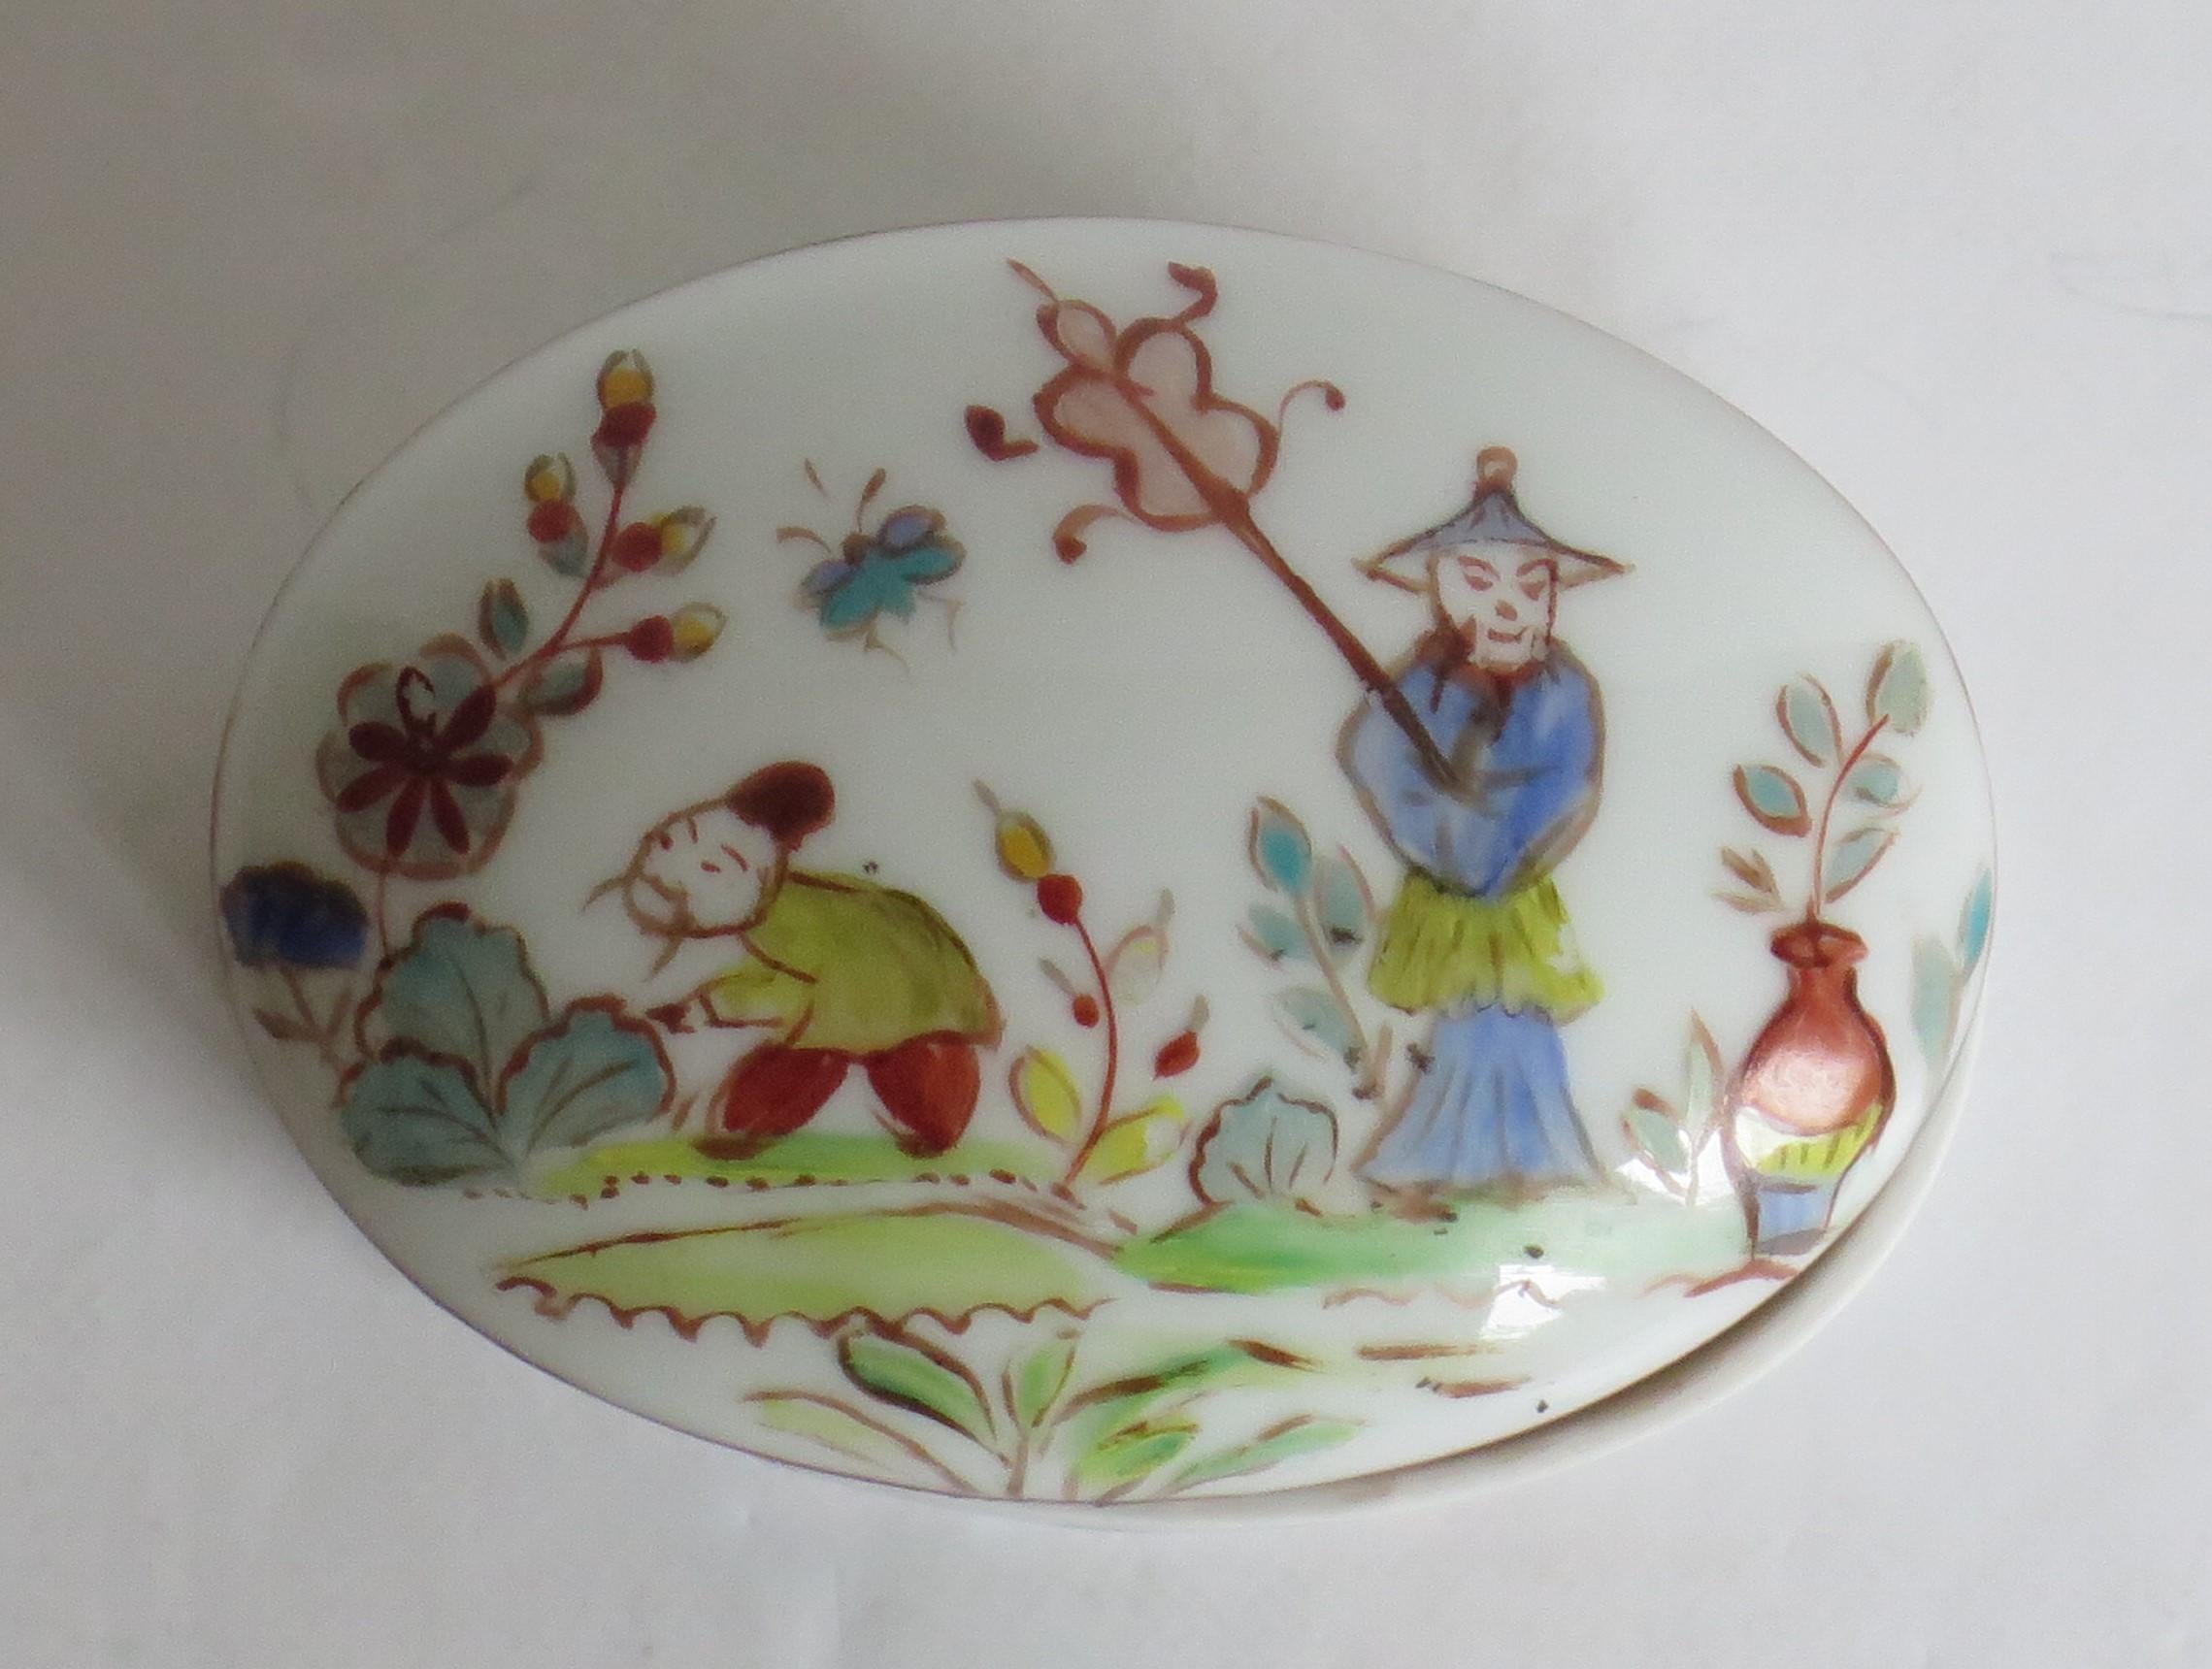 Voici une boîte très décorative en porcelaine de forme ovale avec couvercle, fabriquée en Chine, vers 1920. 

La boîte est bien empotée et de forme ovale, le couvercle étant bombé.

La boîte est bien peinte à la main dans la palette de la